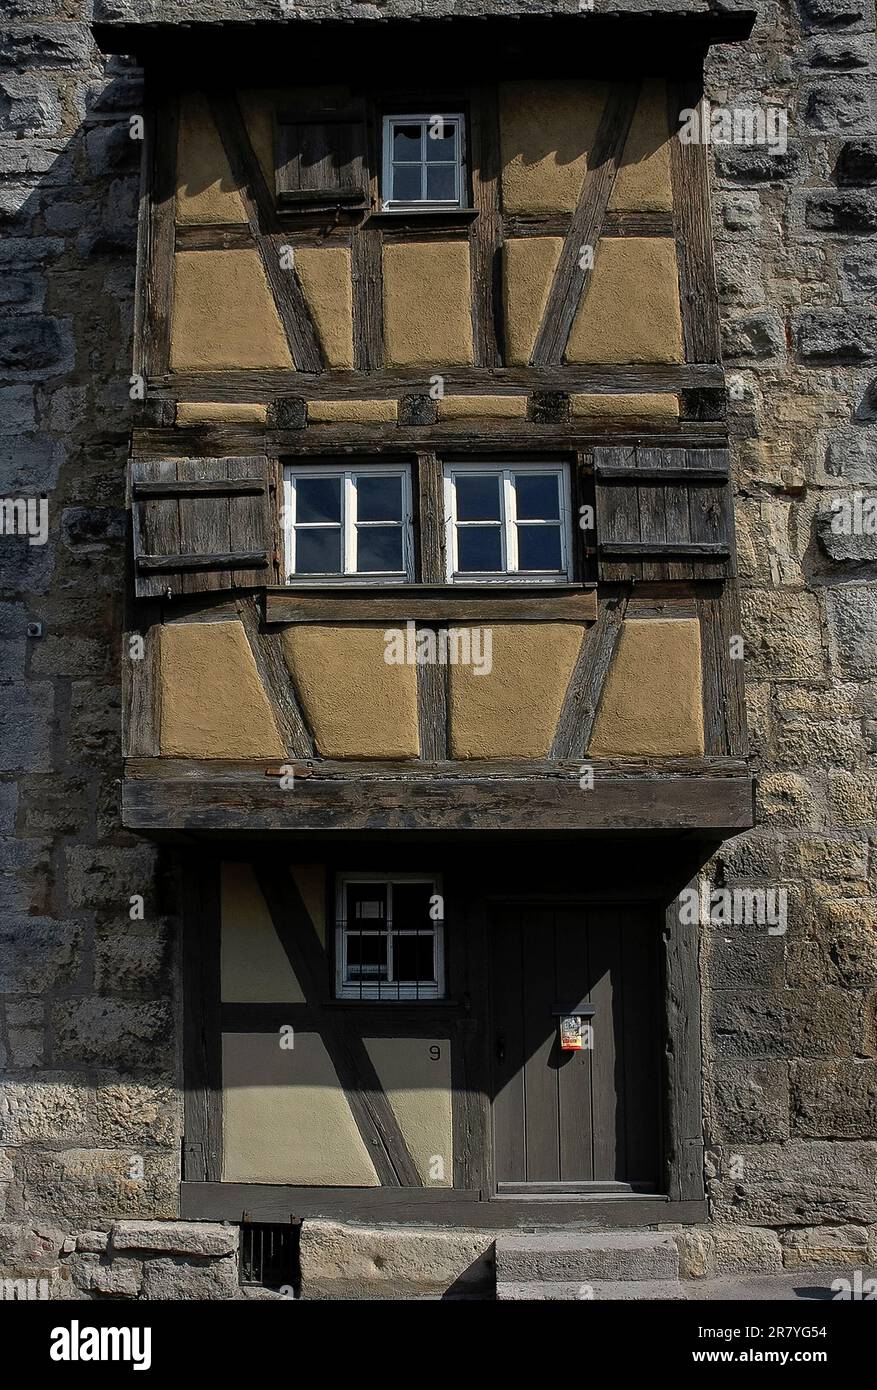 Halbholzprojektion auf den Hangman-Turm oder Henkersturm, der Anfang der 1400s v. Chr. in Rothenburg ob der Tauber, Bayern, errichtet wurde. Der Turm erhielt seinen Namen wahrscheinlich aus der Nähe zu einem Ort, an dem die Hinrichtung stattfand. Stockfoto